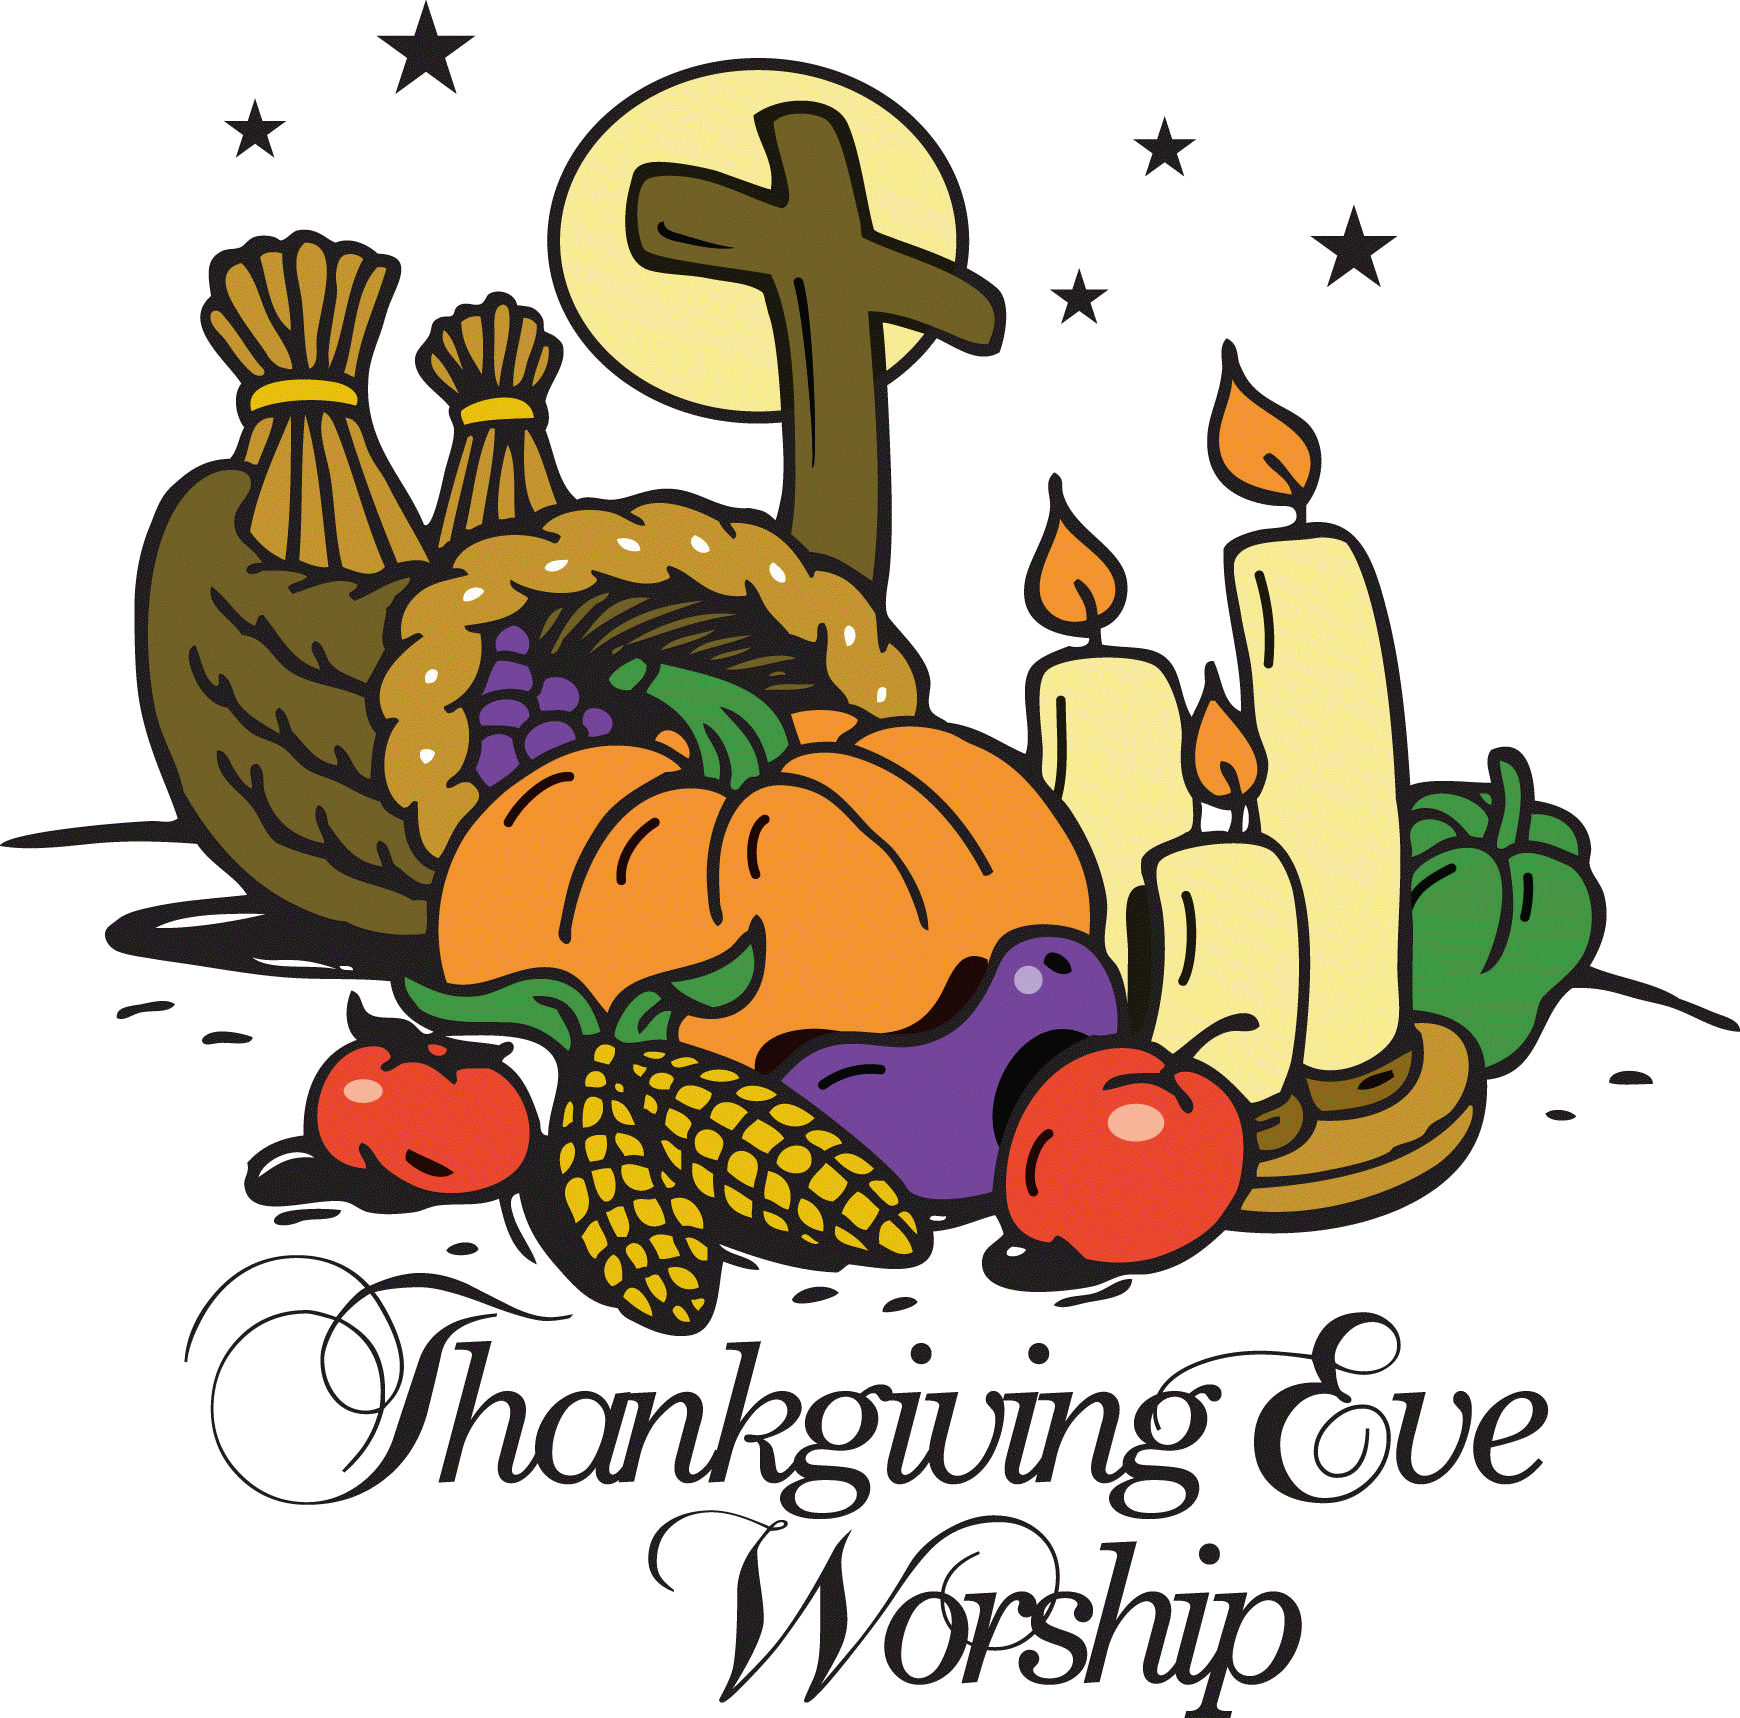 Thanksgiving Eve Worship